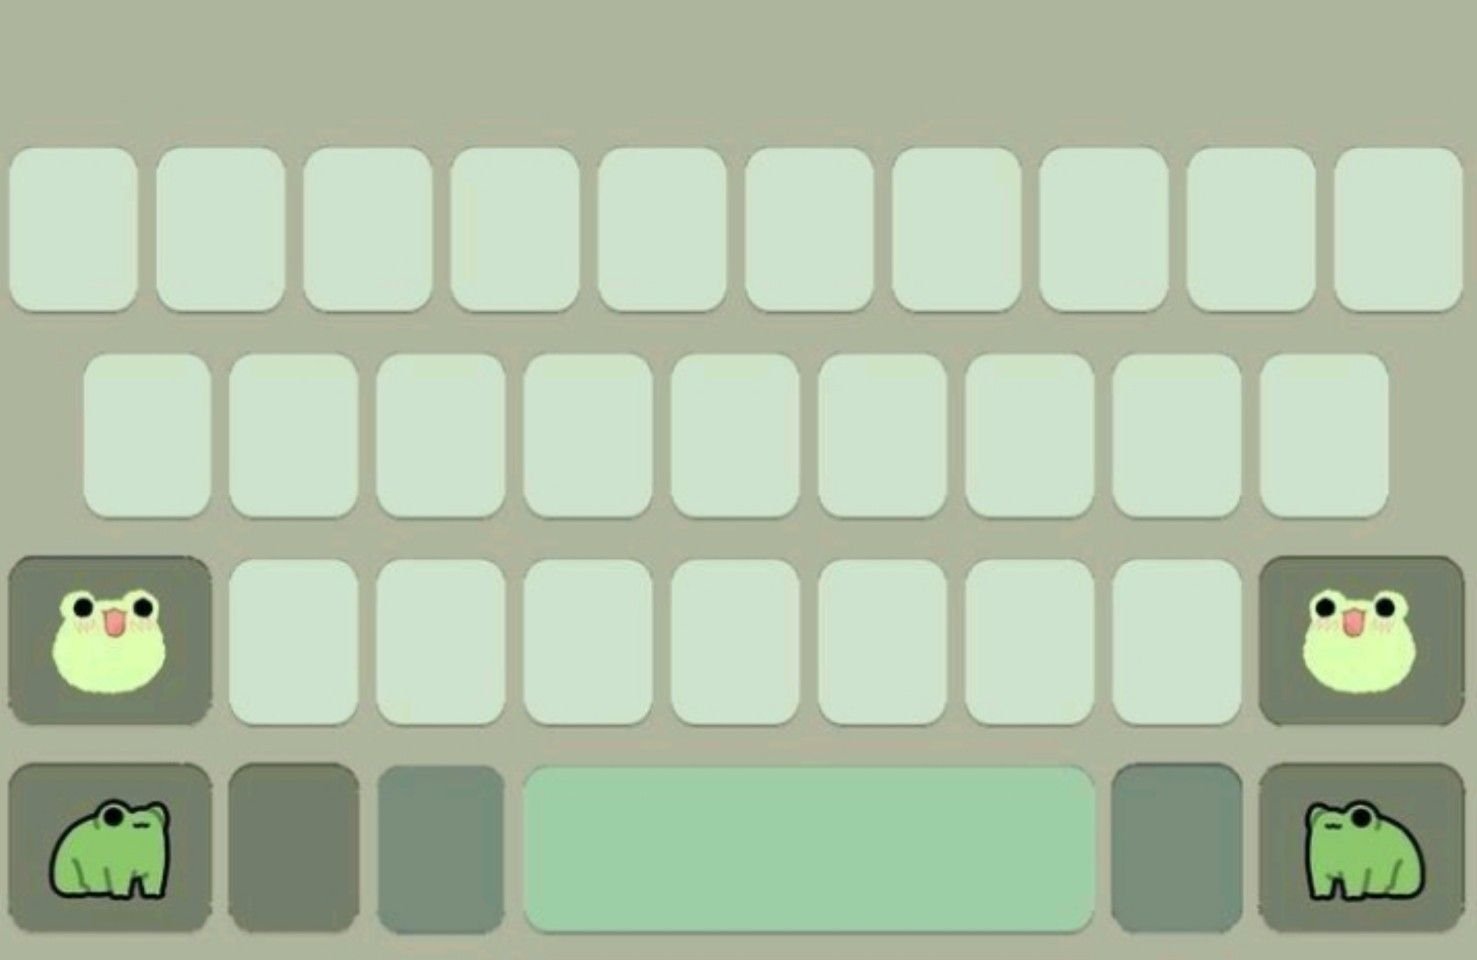 Gboard Keyboard Wallpaper aesthetic